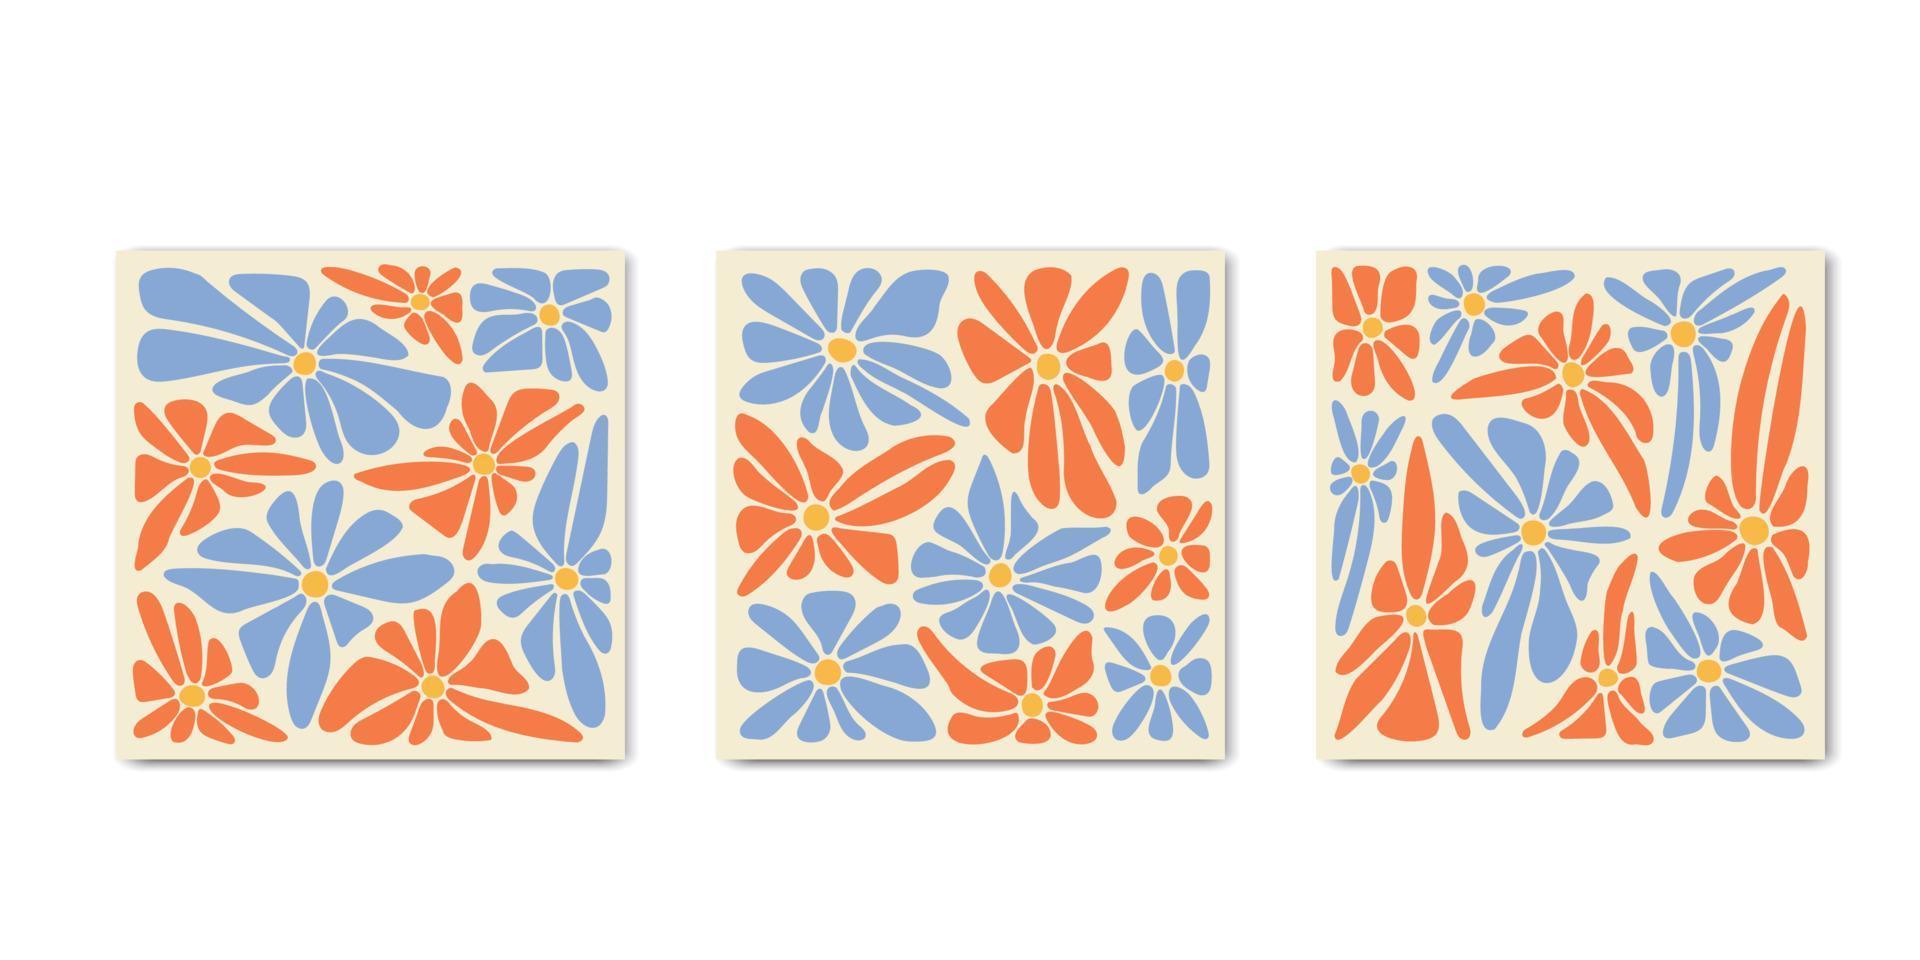 1970 Retro groovy Gänseblümchen-Blumen-Quadratplakate. abstrakte gewellte Abdeckungen Retro-Design. kurviger psychedelischer Blütenhintergrund. Vektor-Illustration vektor